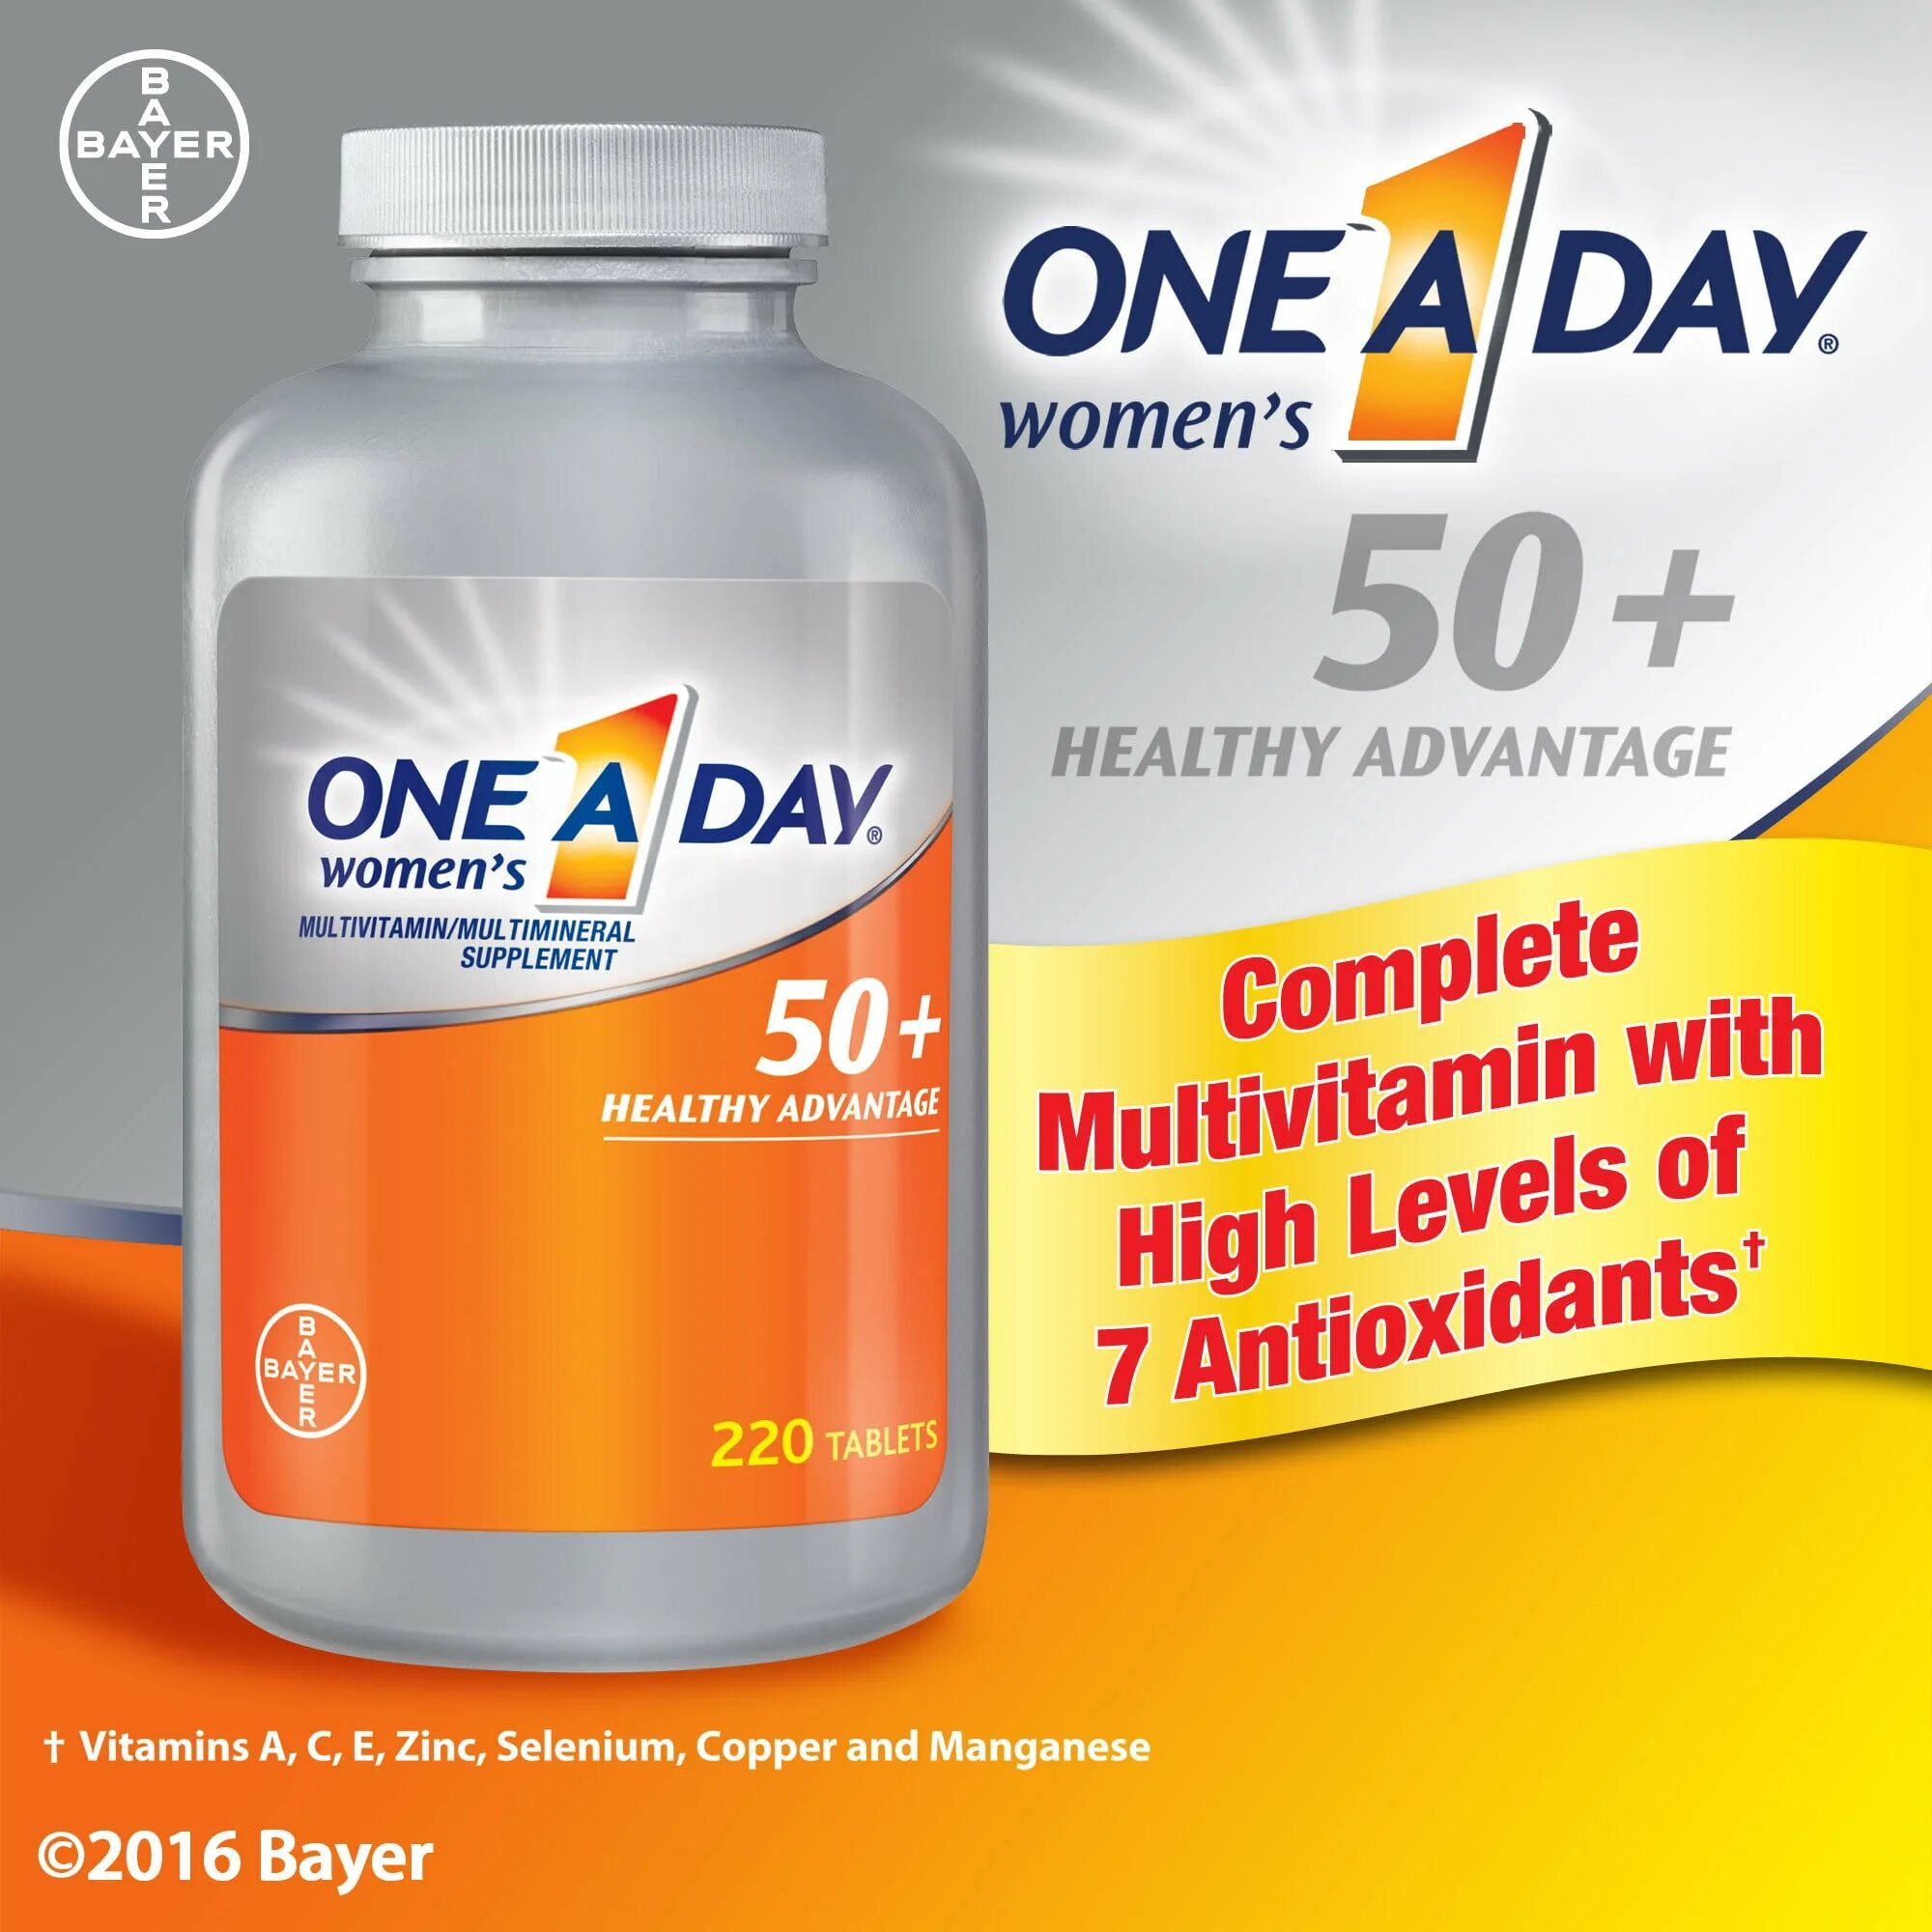 Витамины one Day 50+. One a Day витамины для женщин 50+. One a Day Womens 50 Multivitamin 220 Tablets. Мультивитамины one a Day для женщин.